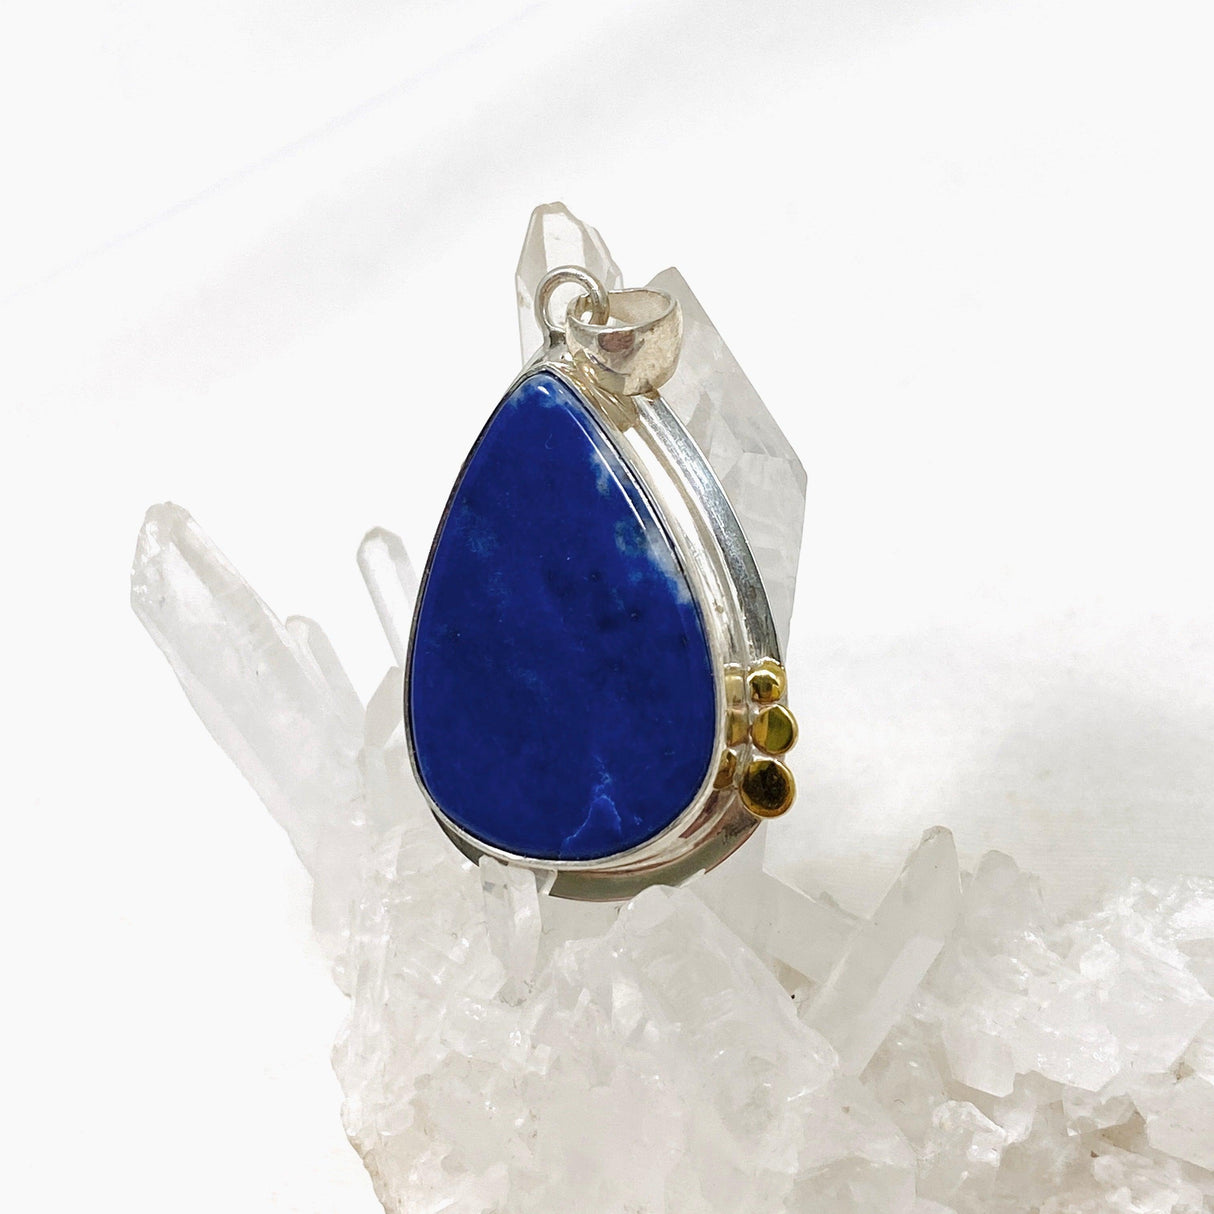 Lapis Lazuli Teardrop Pendant with Gold Detailing KPGJ3827 - Nature's Magick